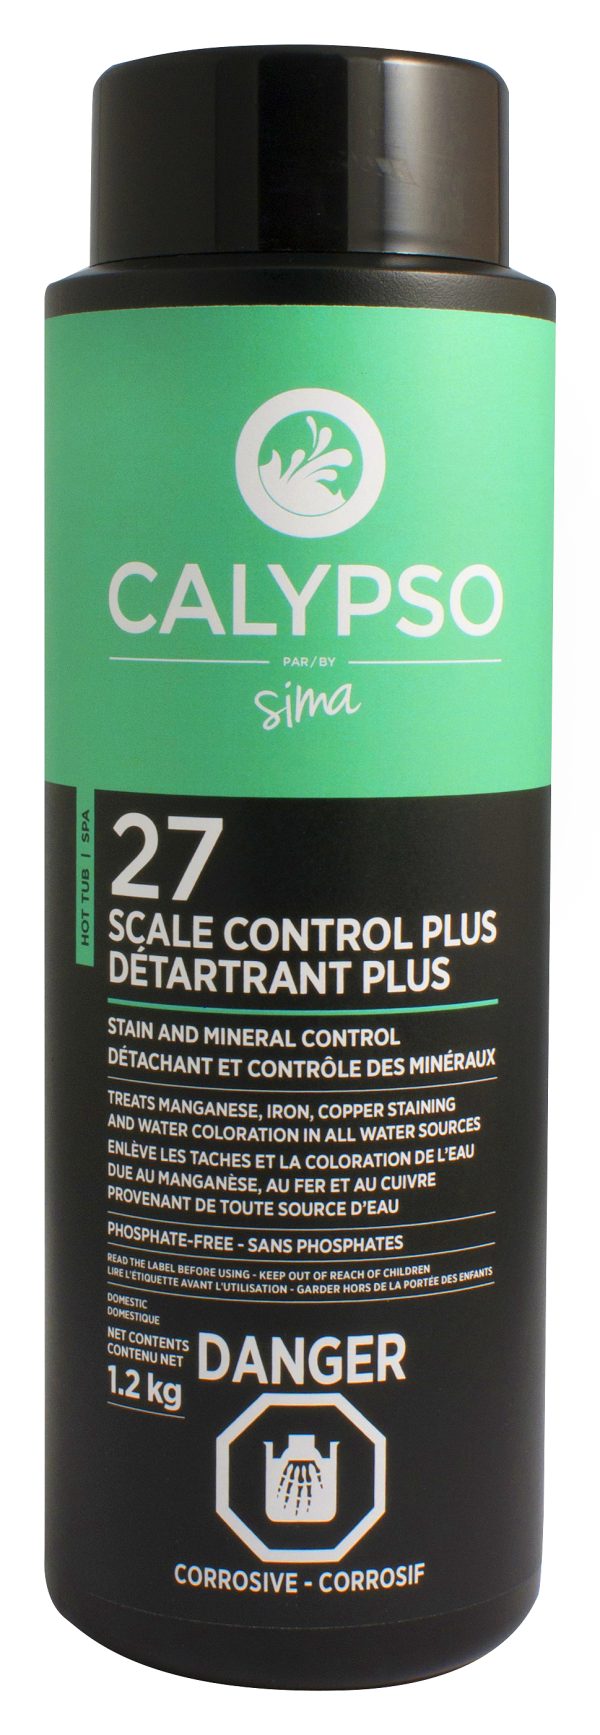 Calypso Détartrant Plus #27 1.2KG - Spa products - Spa maintenance - Sima POOLS & SPAS